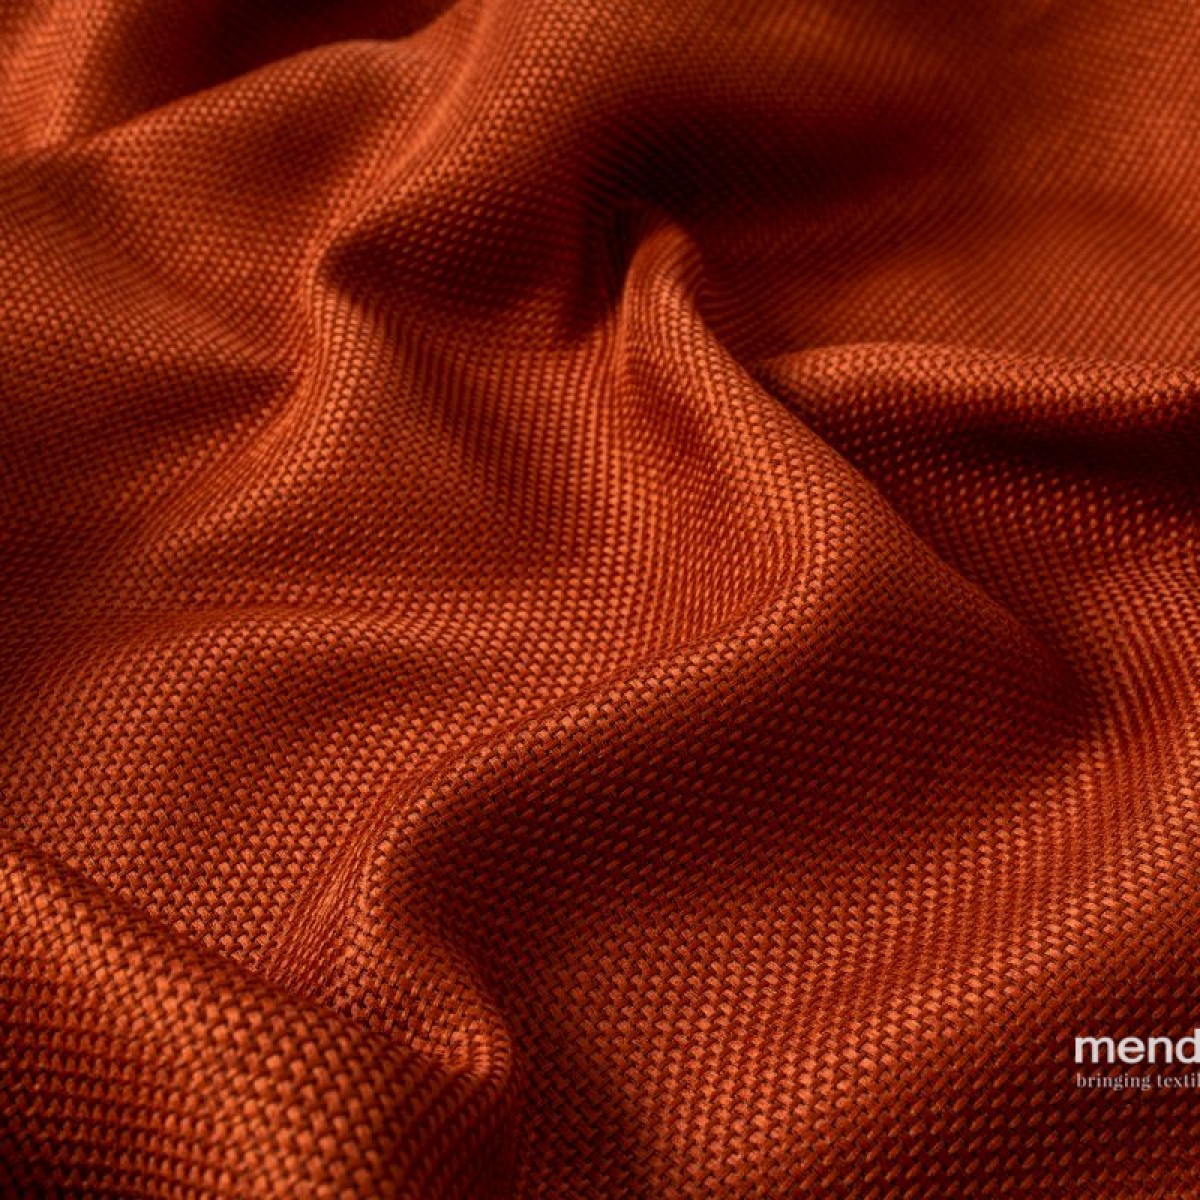 Draperii Mendola fabrics MDF-237-CHEER. Conține culorile: Roșu, Roșu Maroniu, Roșu, Roșu Închis, Roșu, Roșu Pur, Roz, Roz Antic, Portocaliu, Portocaliu Profund